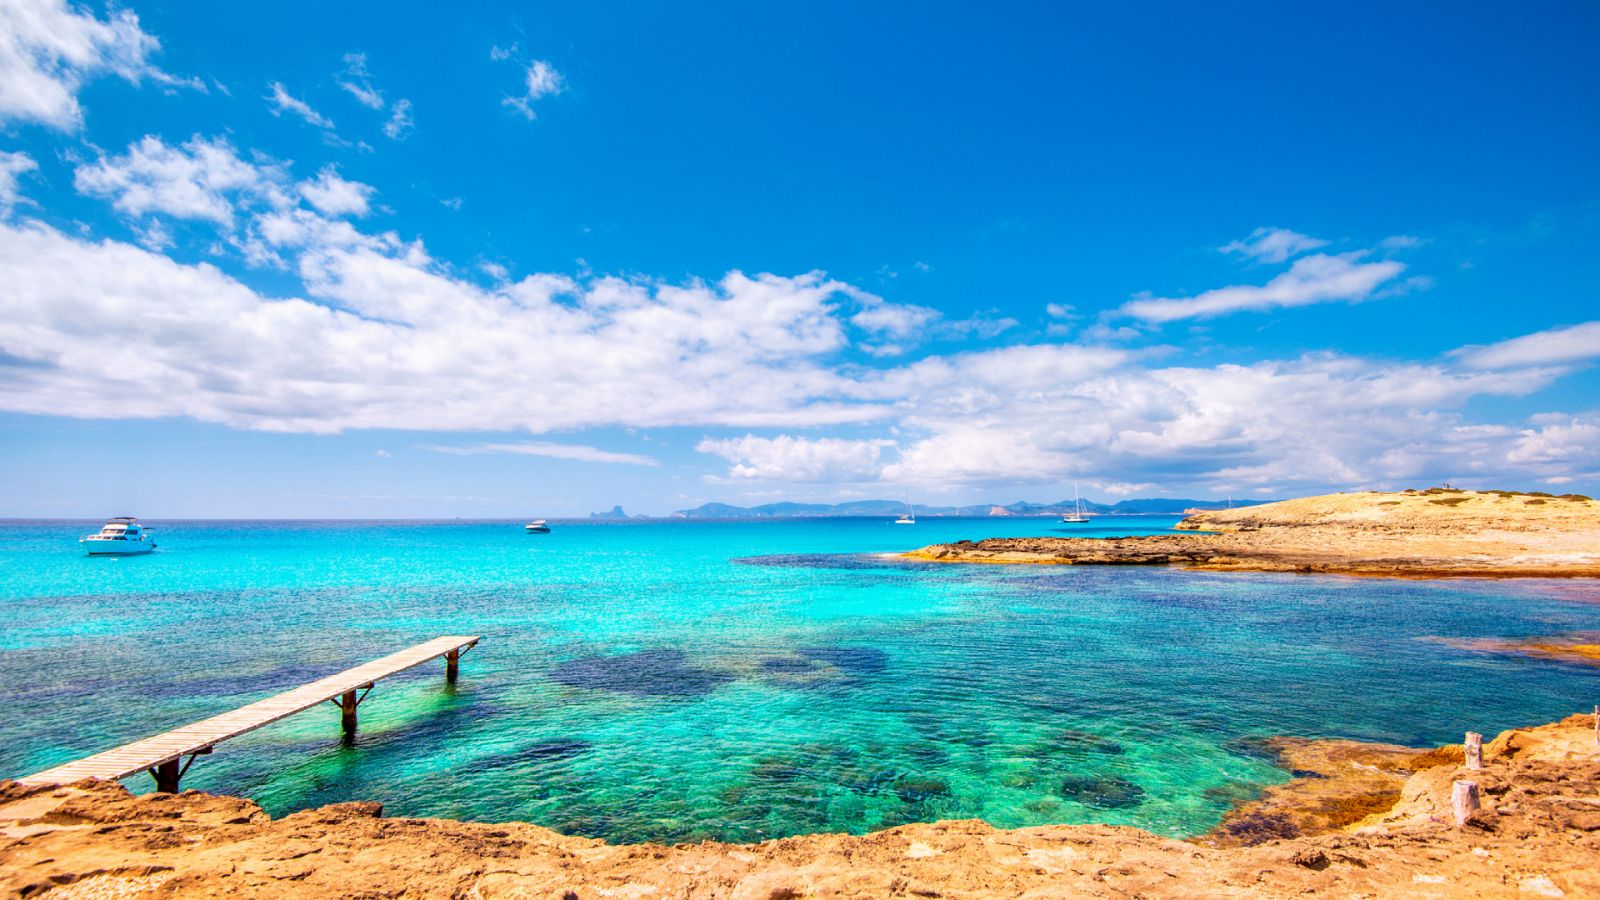 24 horas - Formentera se erige como "destino privilegiado" - Escuchar ahora